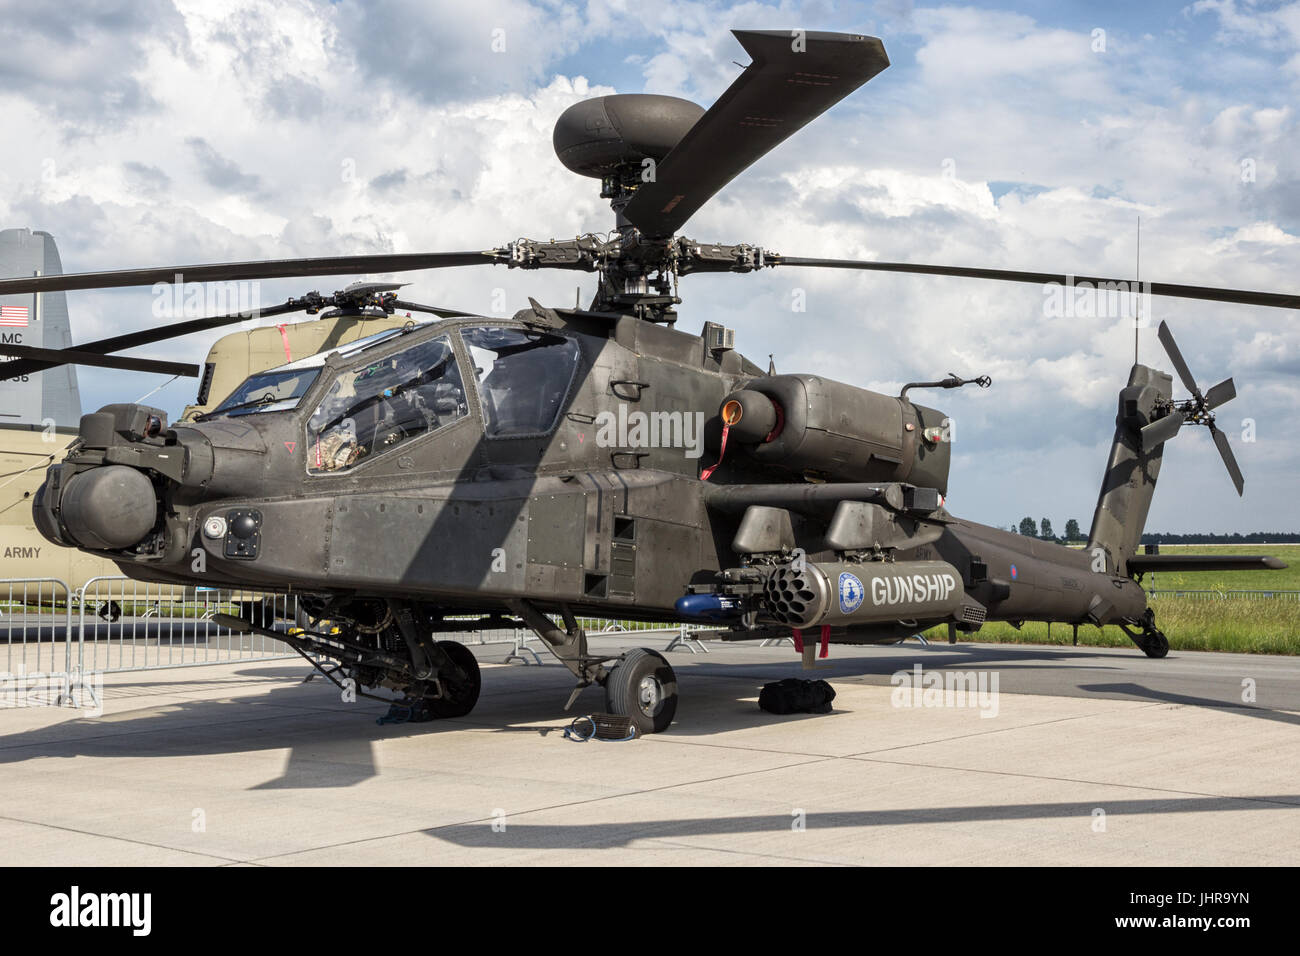 Berlín - jun 2, 2016: el ejército británico de helicópteros de ataque AH-64D en exhibición en el Salón aeronáutico ILA de Berlín Foto de stock